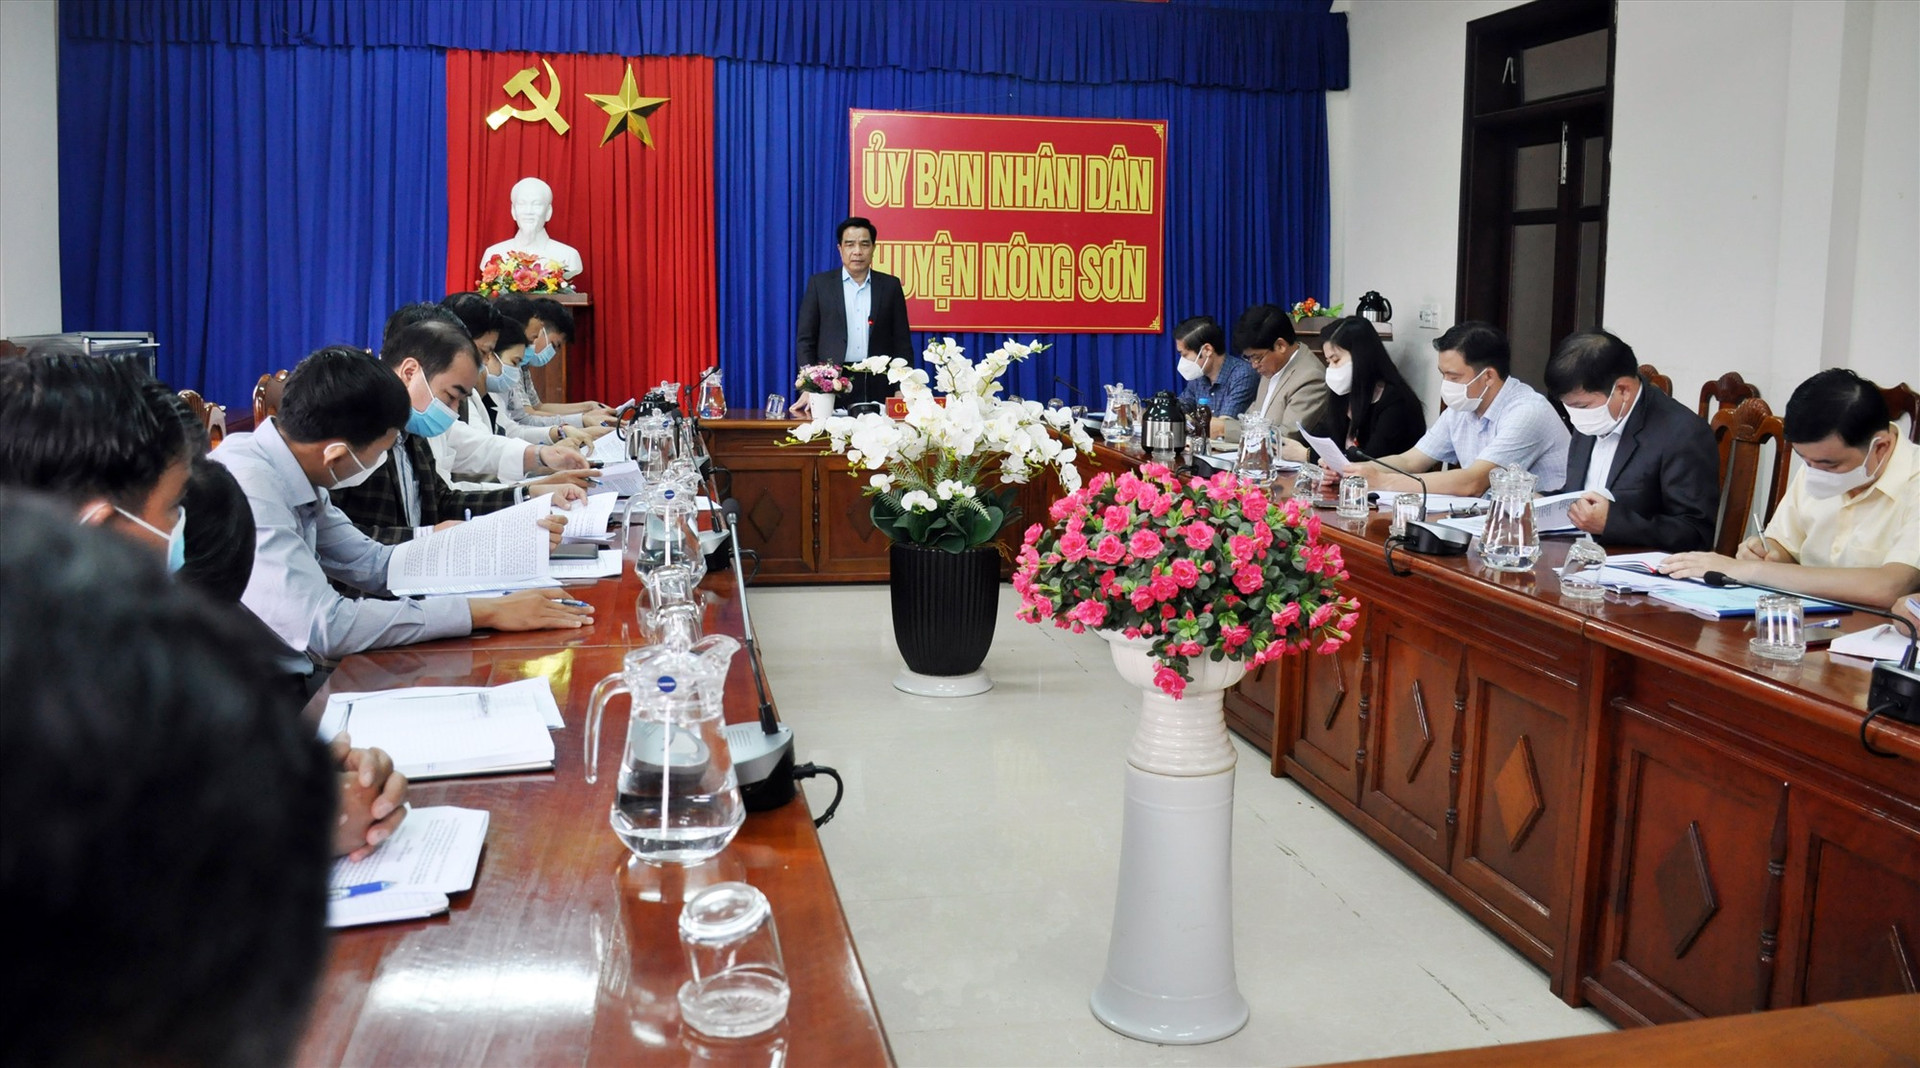 Đoàn đại biểu Quốc hội tỉnh giám sát việc thực hiện sắp xếp đơn vị hành chính cấp xã giai đoạn 2019 - 2021 tại huyện Nông Sơn. Ảnh: N.Đ